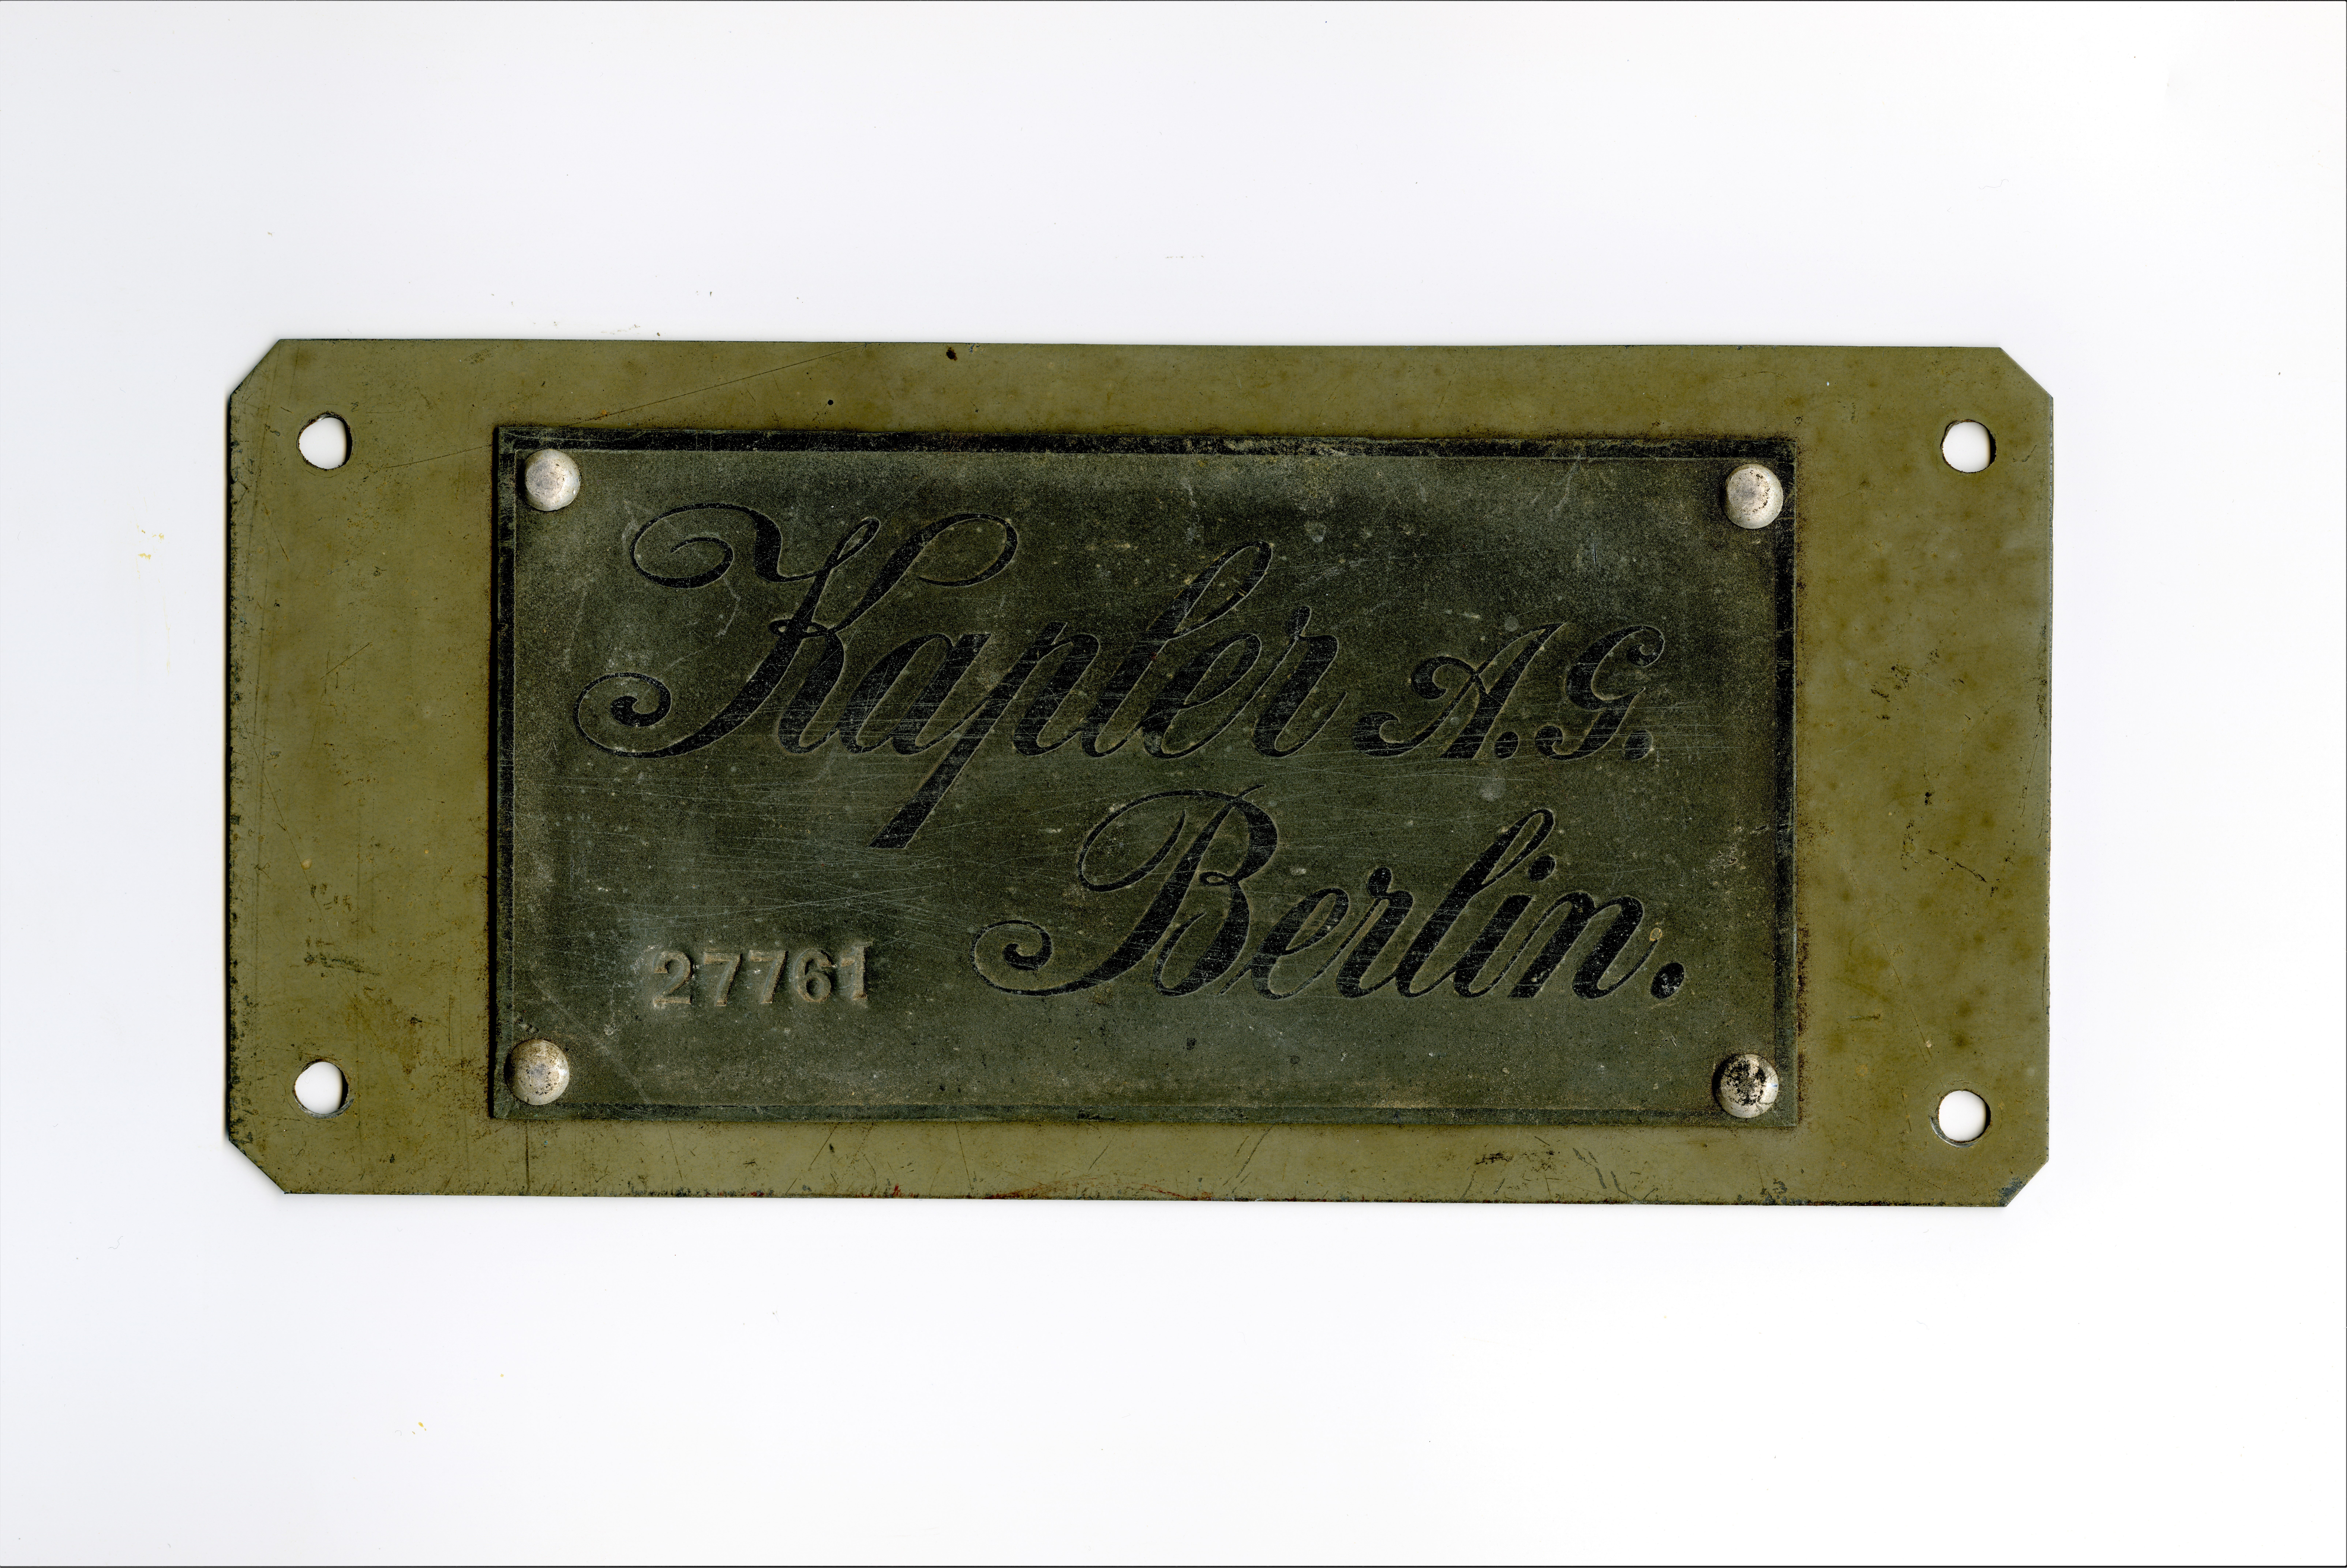 Firmenschild der Kapler AG Berlin, Nr. 27761 (Historische Mühle von Sanssouci CC BY-NC-SA)